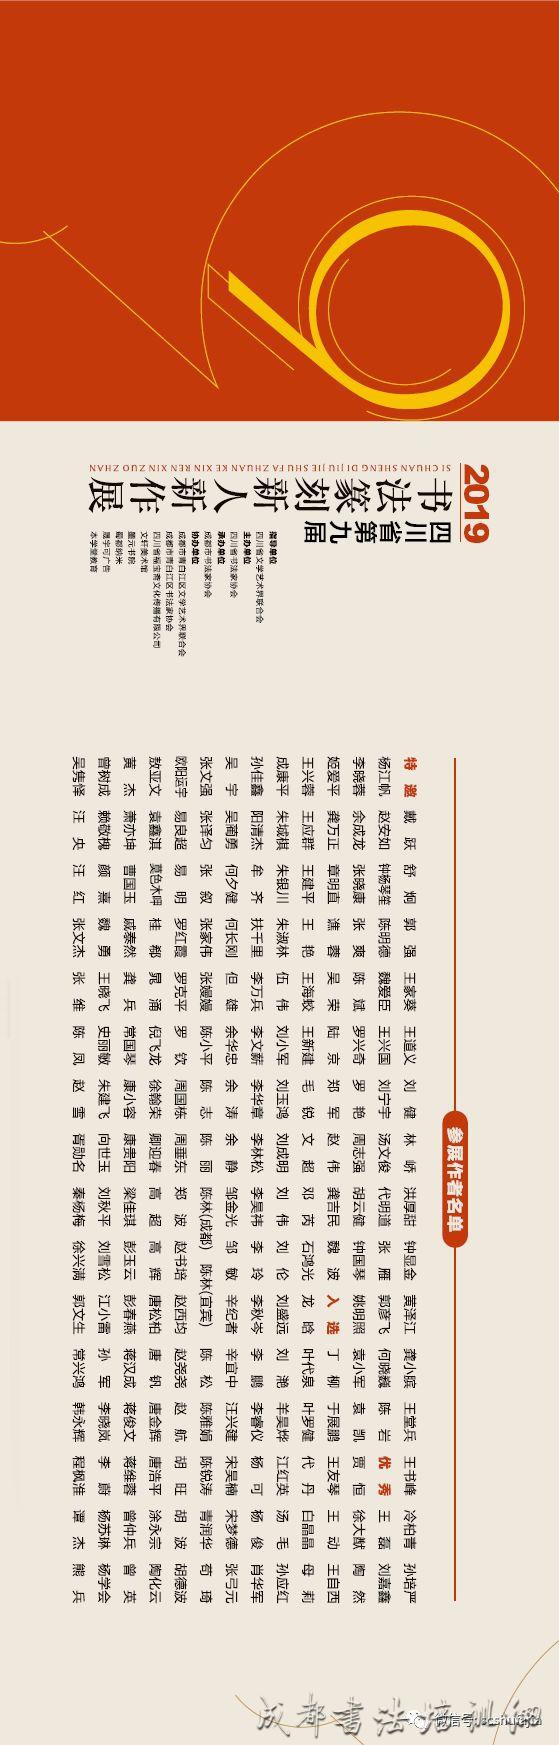 【展讯】四川省第九届书法篆刻新人新作展将于11月6日上午10时在文轩美术馆举行开幕式 &#8211;